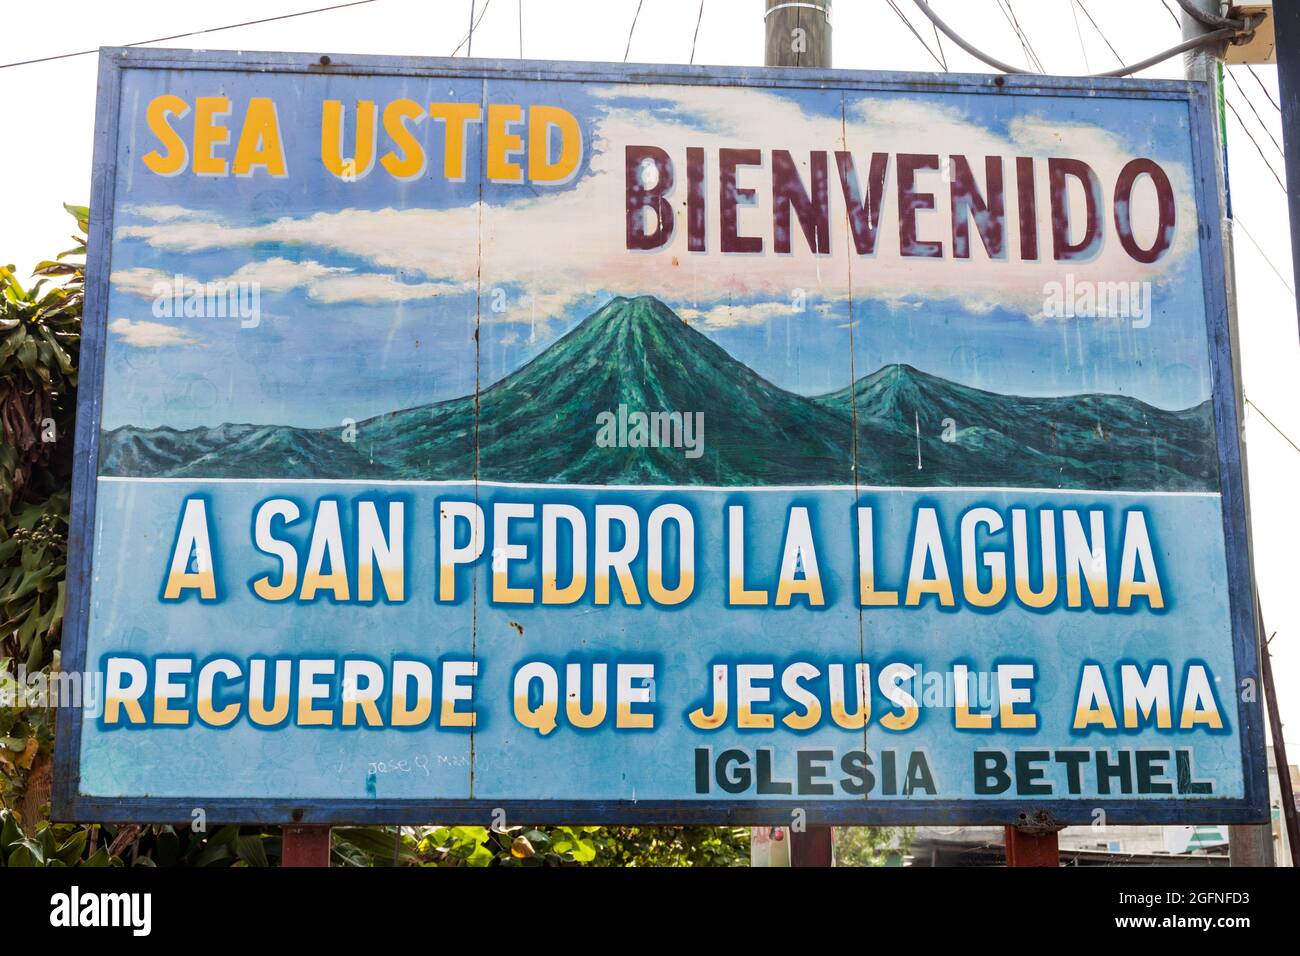 SAN PEDRO LA Laguna, GUATEMALA - 23 MARZO 2016: Cartello siate accolti a San Pedro la Laguna, ricordate che Gesù vi ama. Il cartello si trova in questa villa Foto Stock